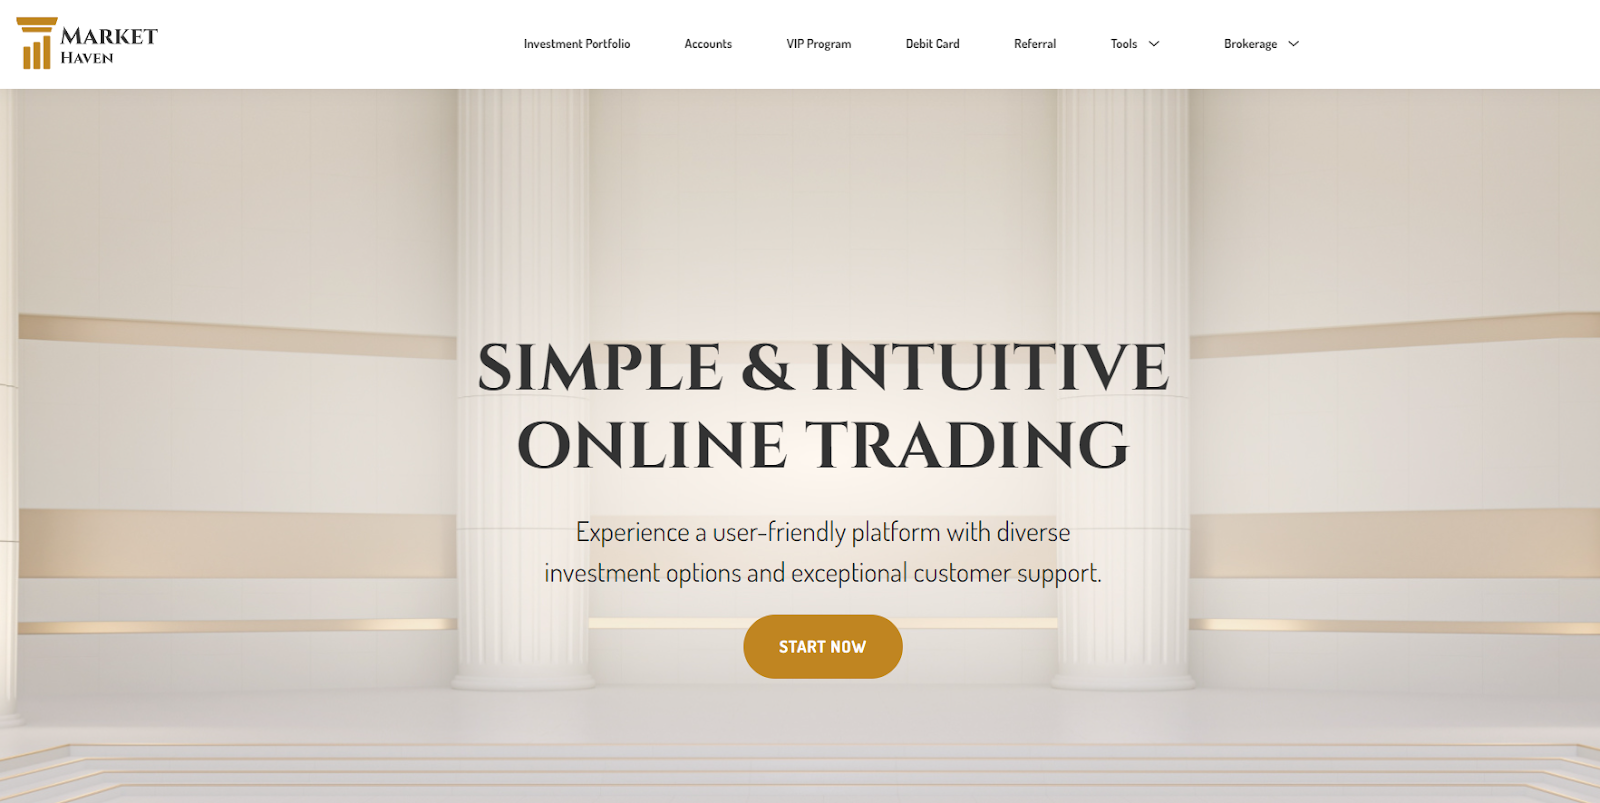 Market Haven website